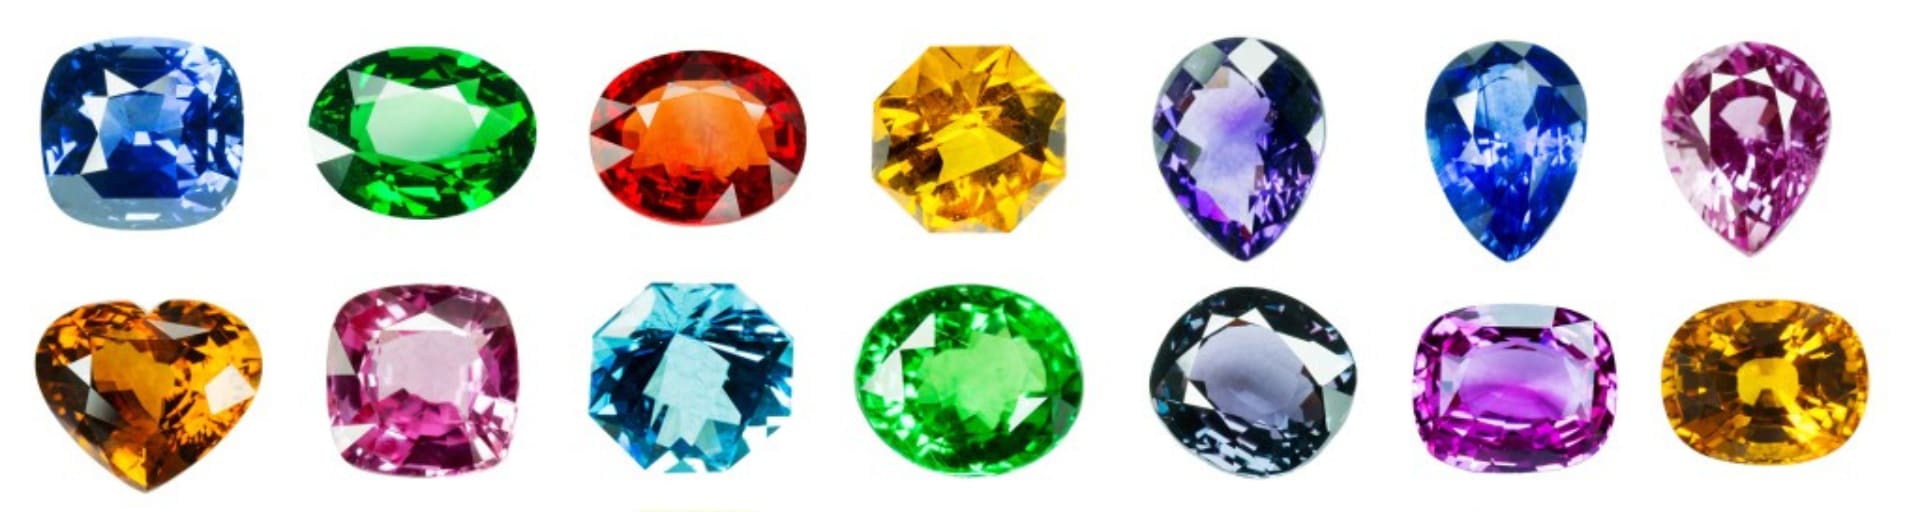 10 Stunning Diamond Alternatives Stones for Engagement Rings –  Folkmarketgems